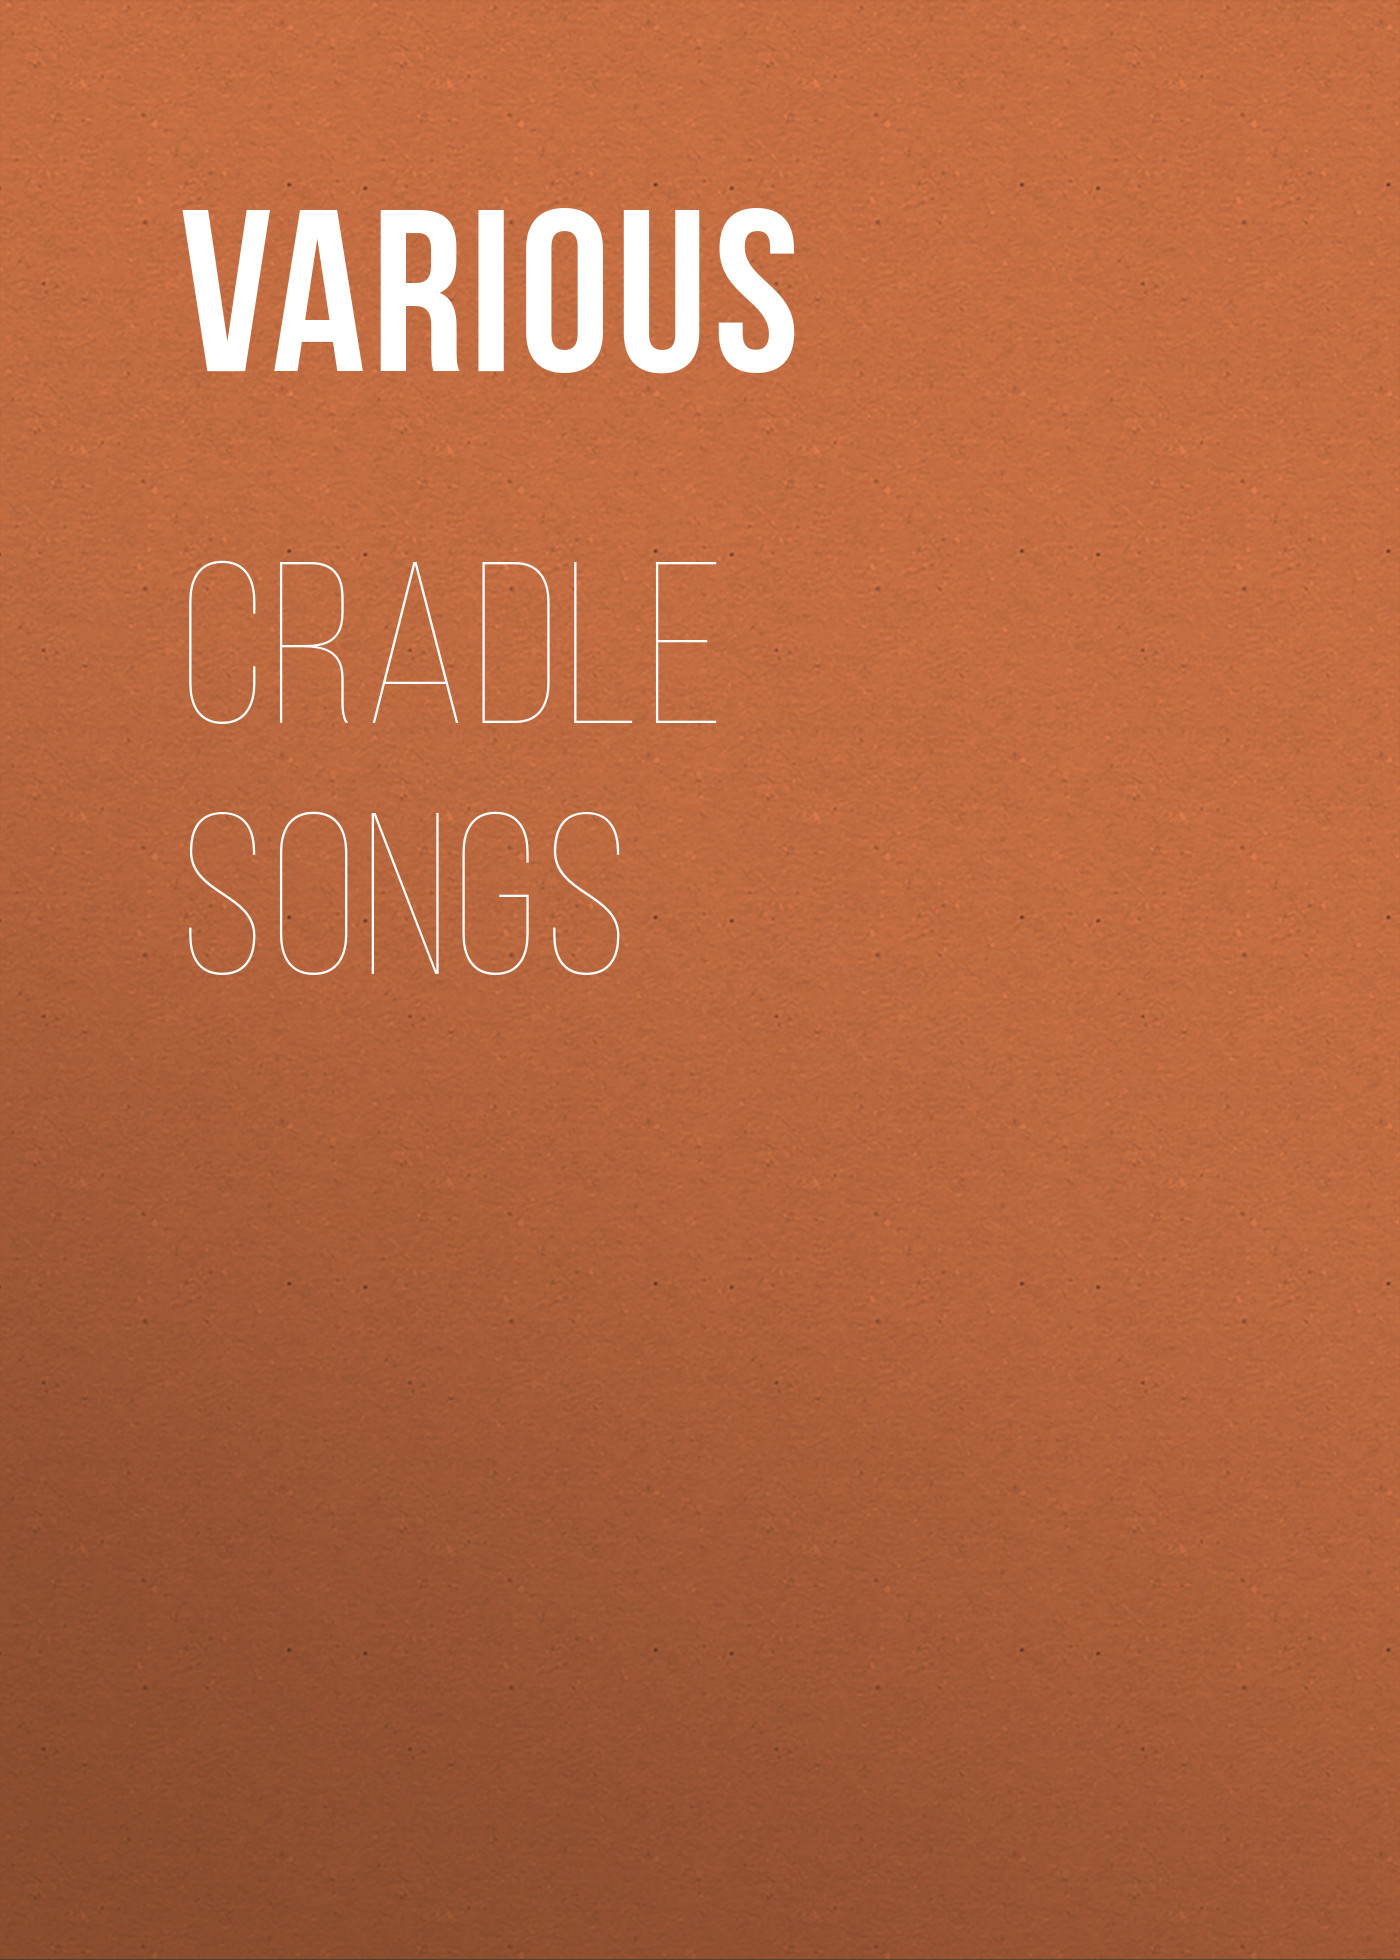 Книга Cradle Songs из серии , созданная  Various, может относится к жанру Поэзия, Музыка, балет, Зарубежные стихи. Стоимость книги Cradle Songs  с идентификатором 25571279 составляет 0 руб.